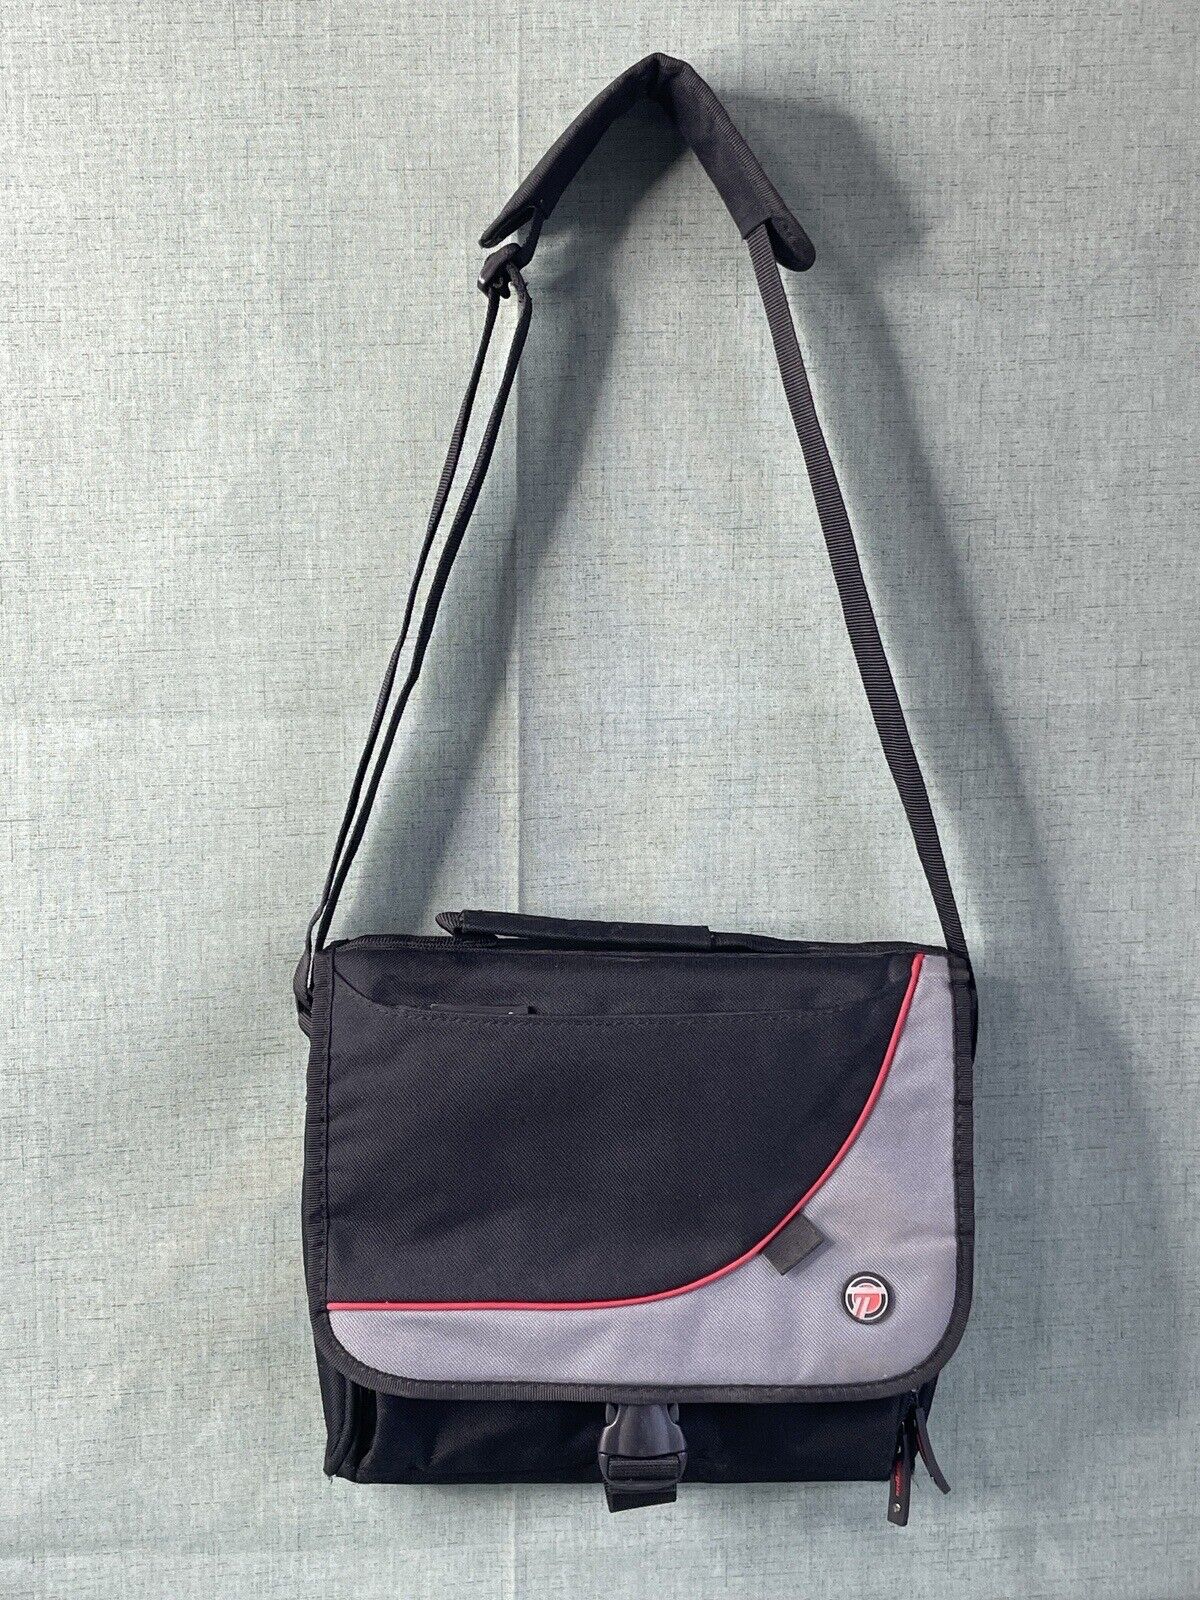 Targus Vintage Black Laptop Bag Padded Multi Pocket Carry Handle Shoulder Strap